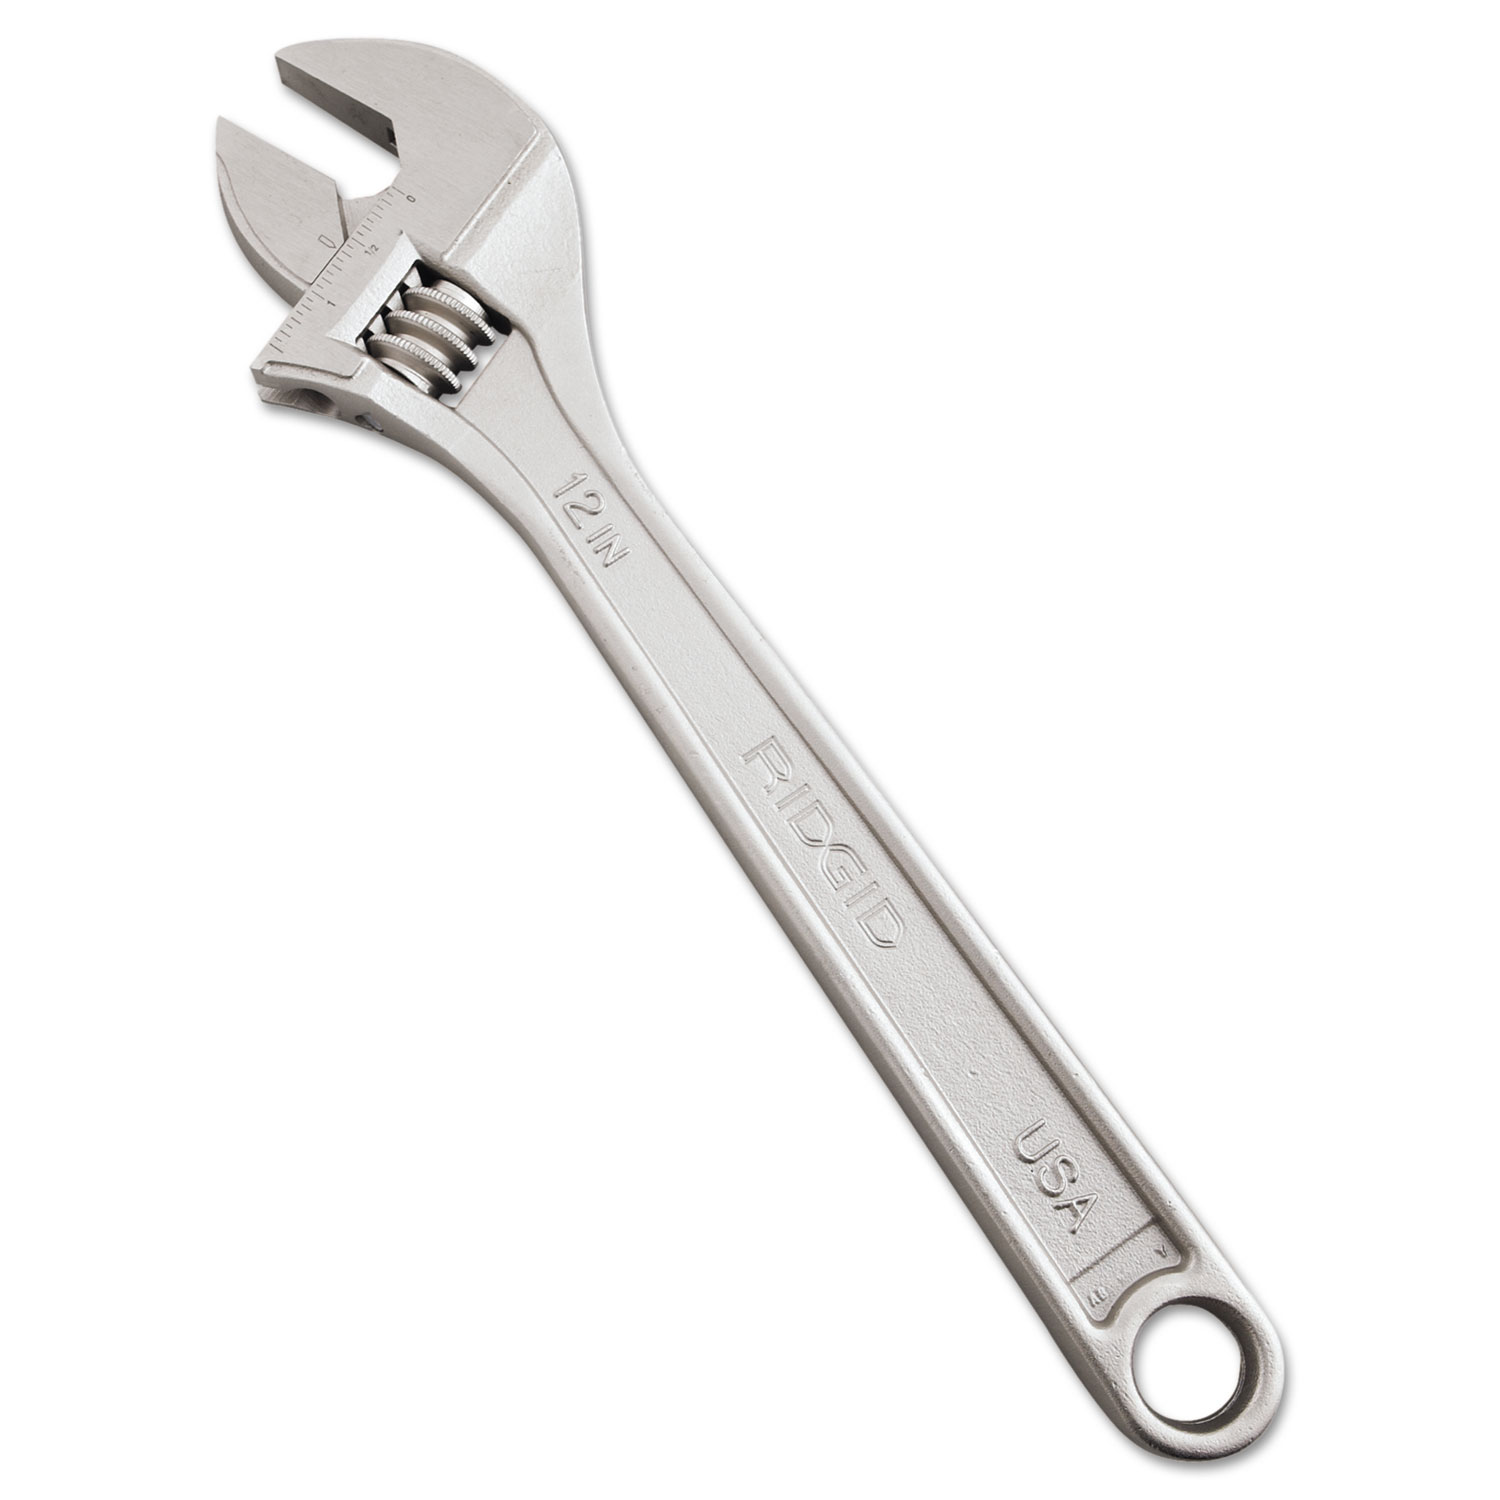 RIDGID Adjustable Wrench, 12 Long, 1 5/16 Jaw Capacity, Chrome Finish